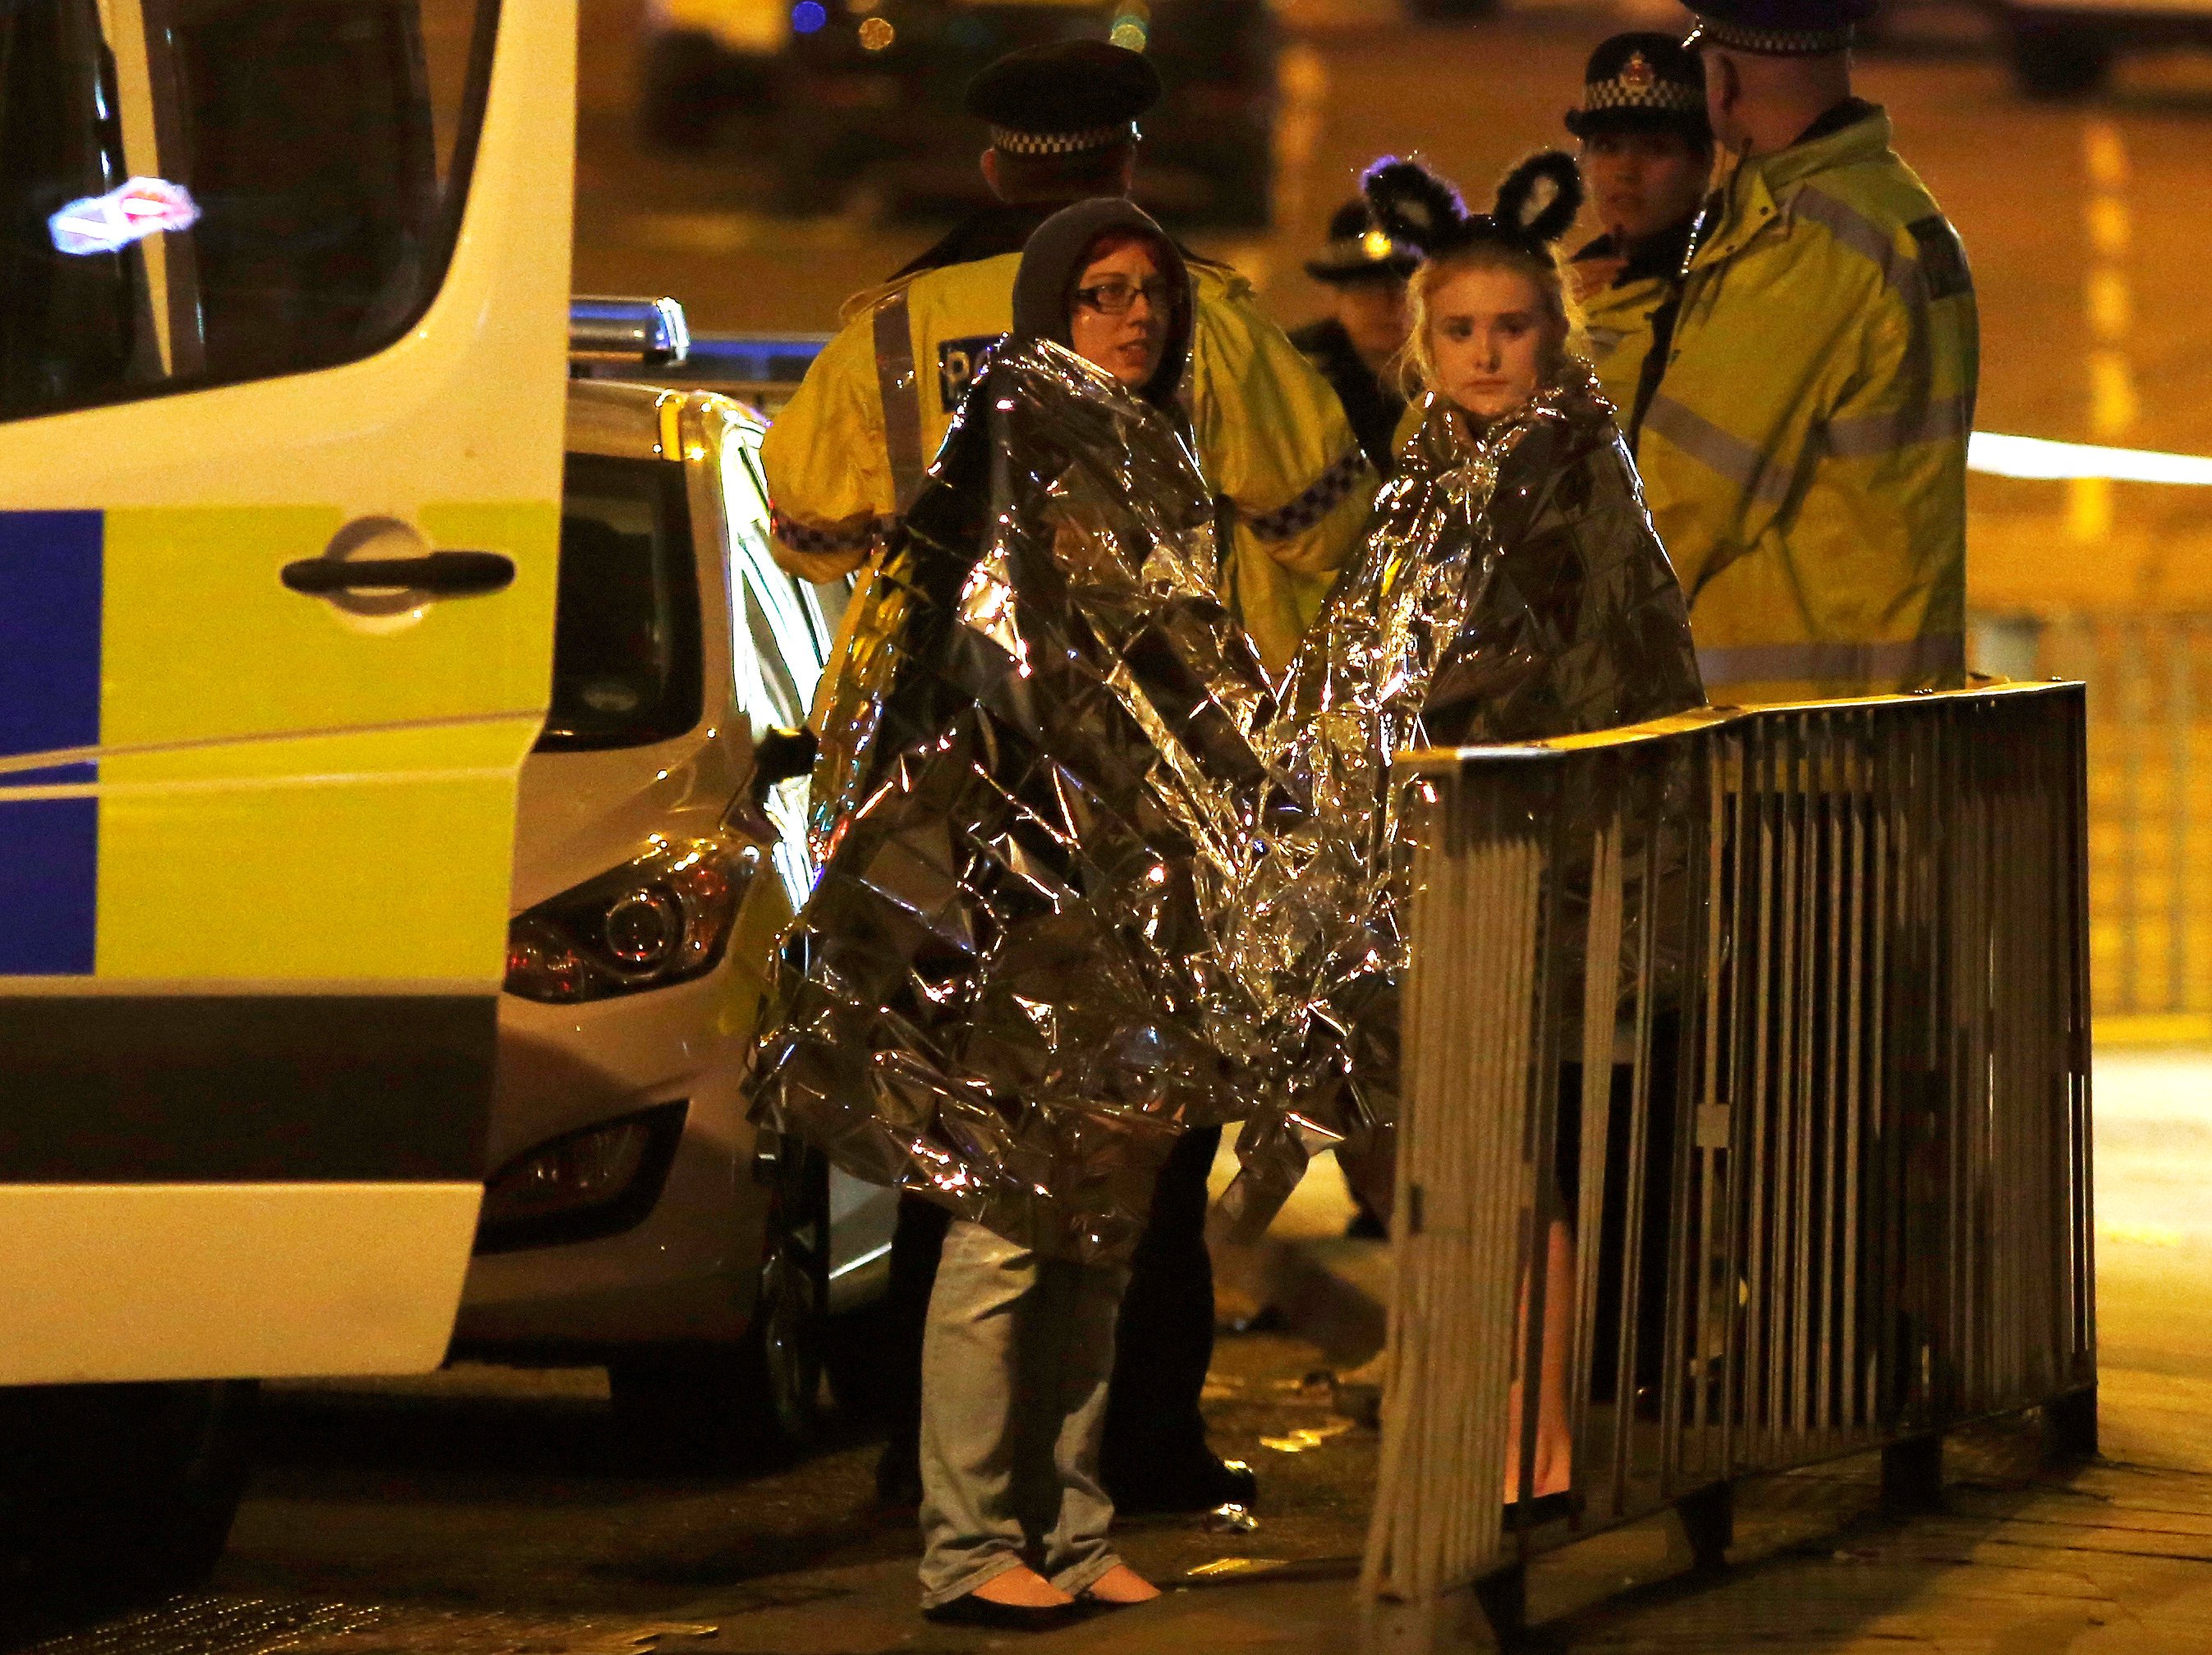 22 قتيلا و60 مصابا فى تفجير قاعة احتفالات بمدينة مانشستر البريطانية بواسطة انتحارى